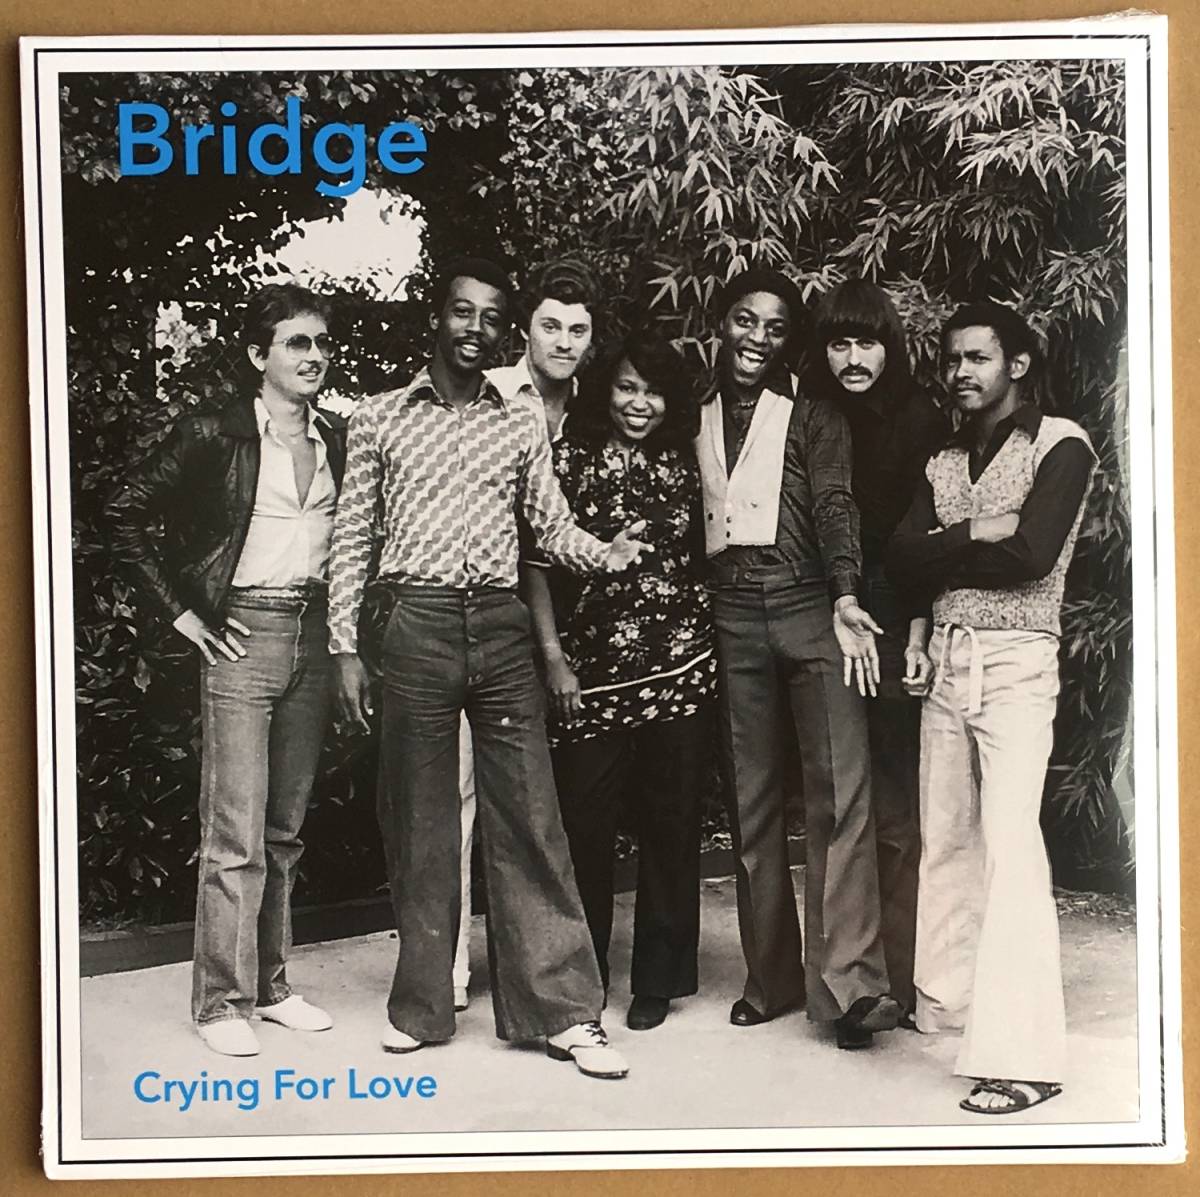 Bridge Crying For Love アナログ盤 2LP レコード 未開封新品 AOR モダン・ソウル ハワイ レアグルーヴ アルバム